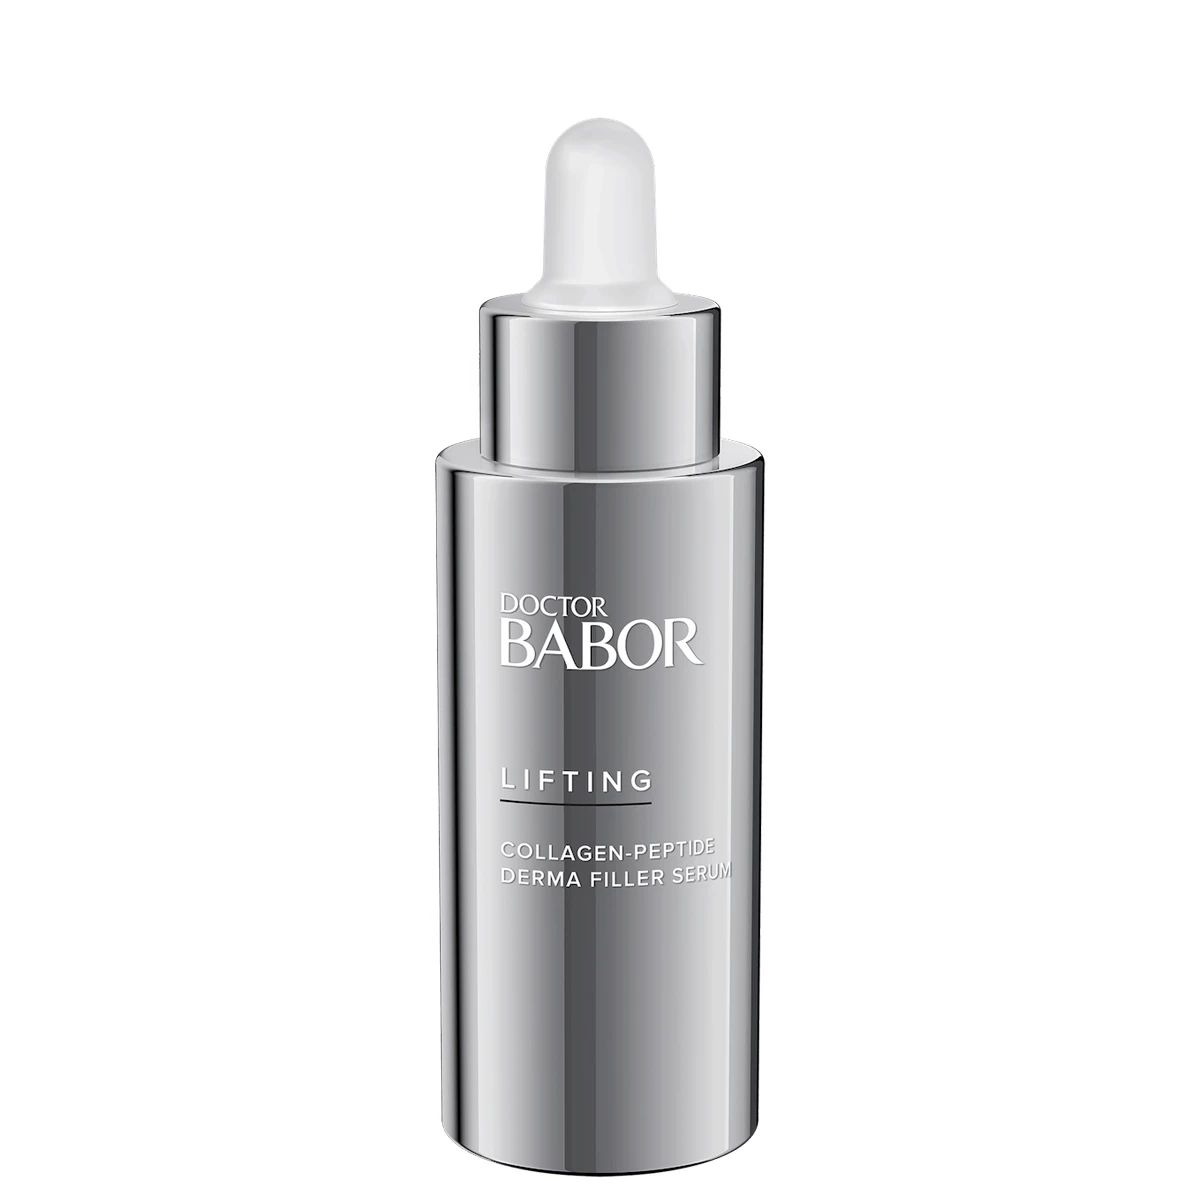 BABOR Collagen-Peptide Derma Filler Serum 30ml - интернет-магазин профессиональной косметики Spadream, изображение 49146